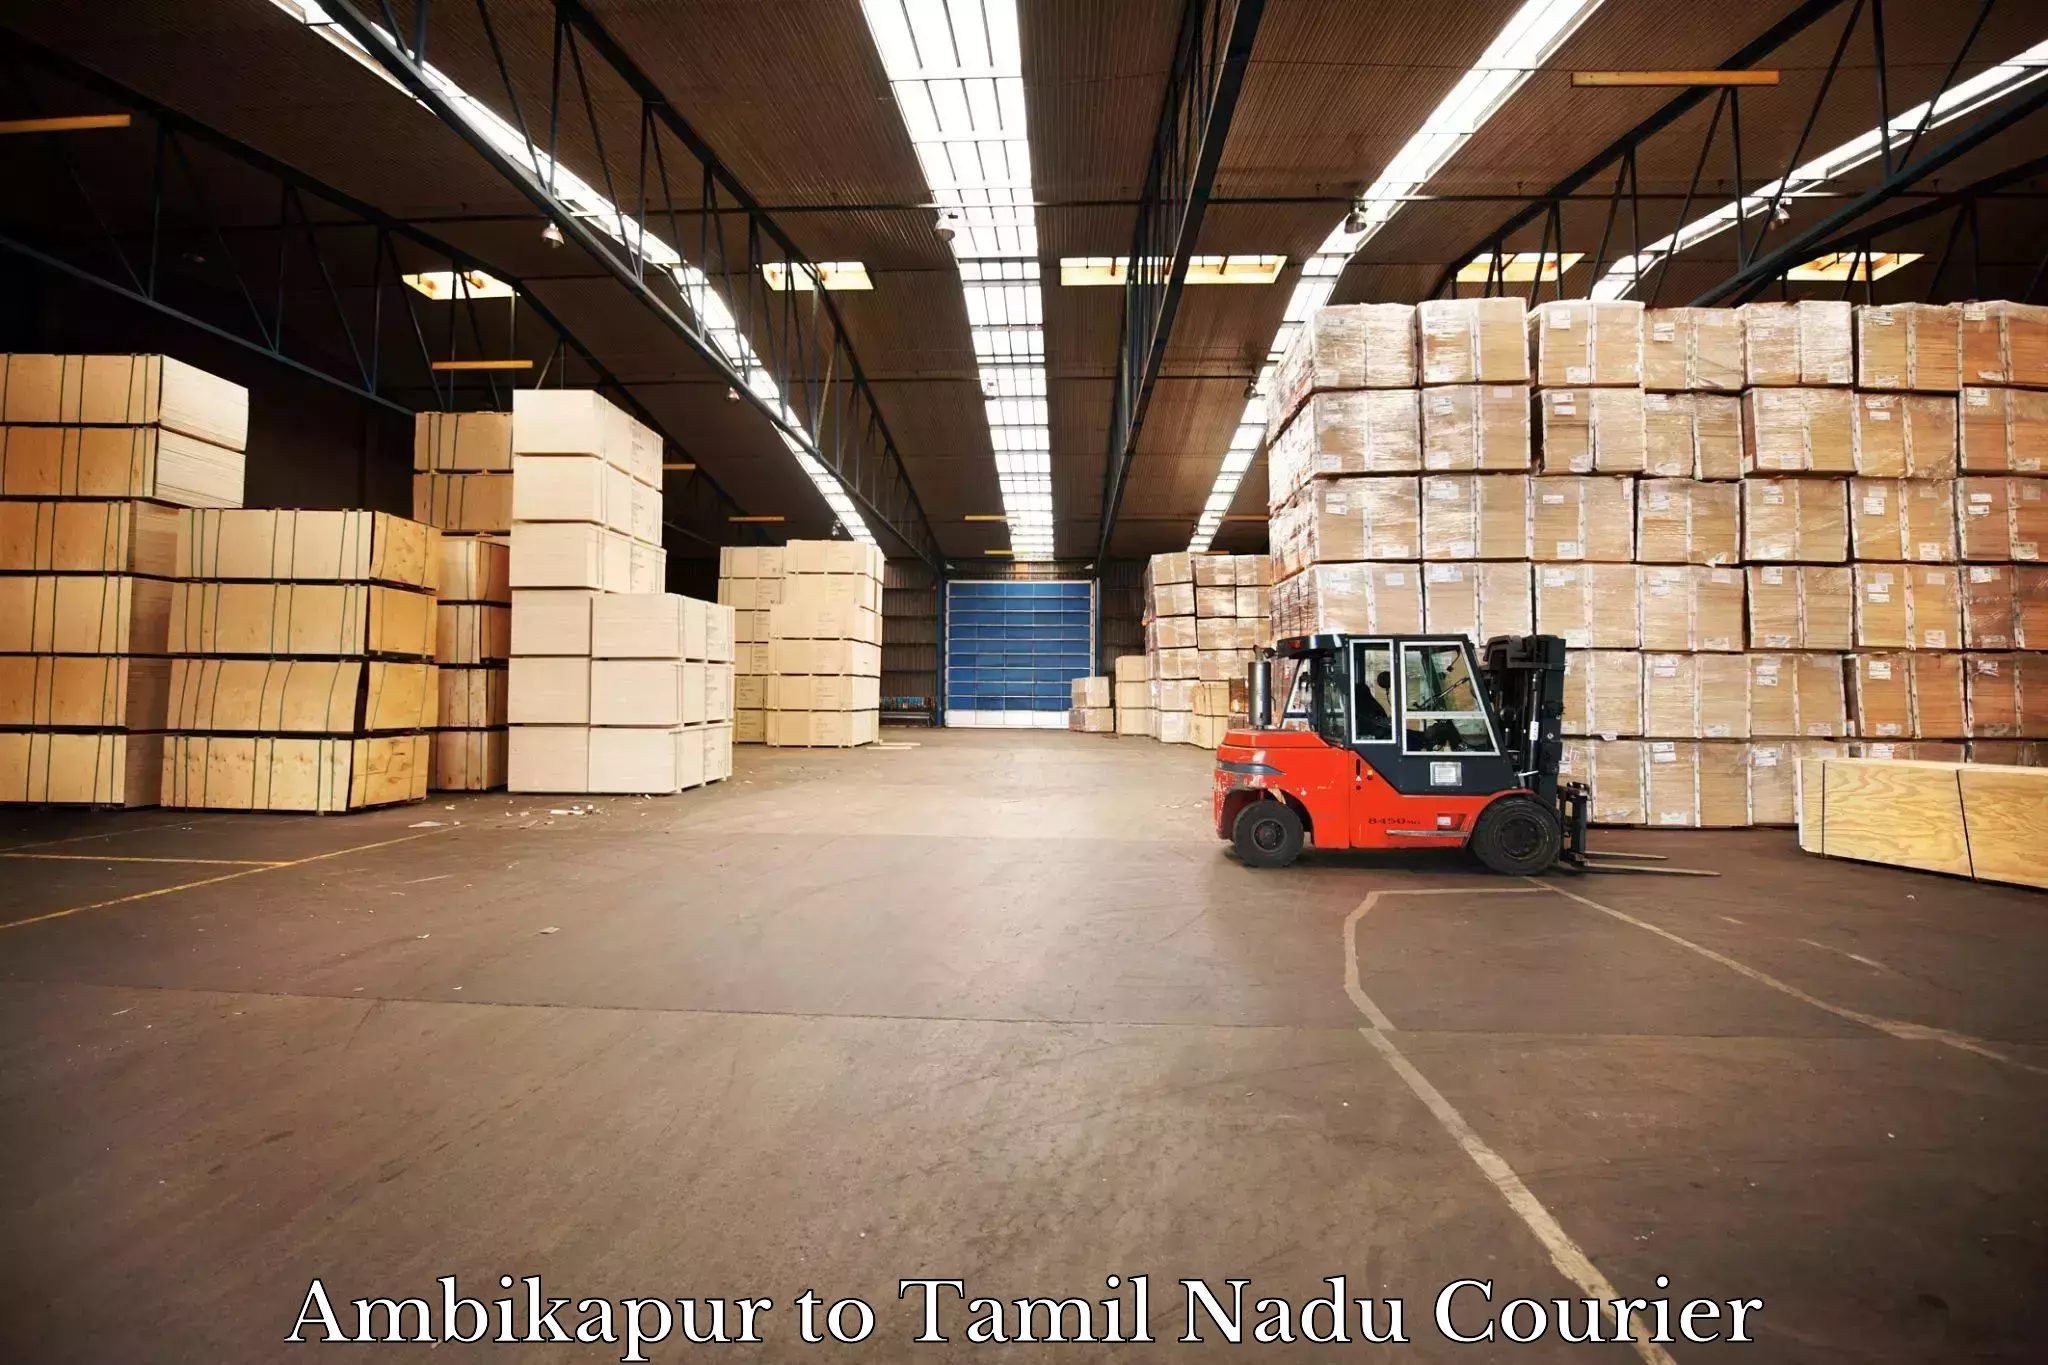 Express logistics service Ambikapur to Mettupalayam